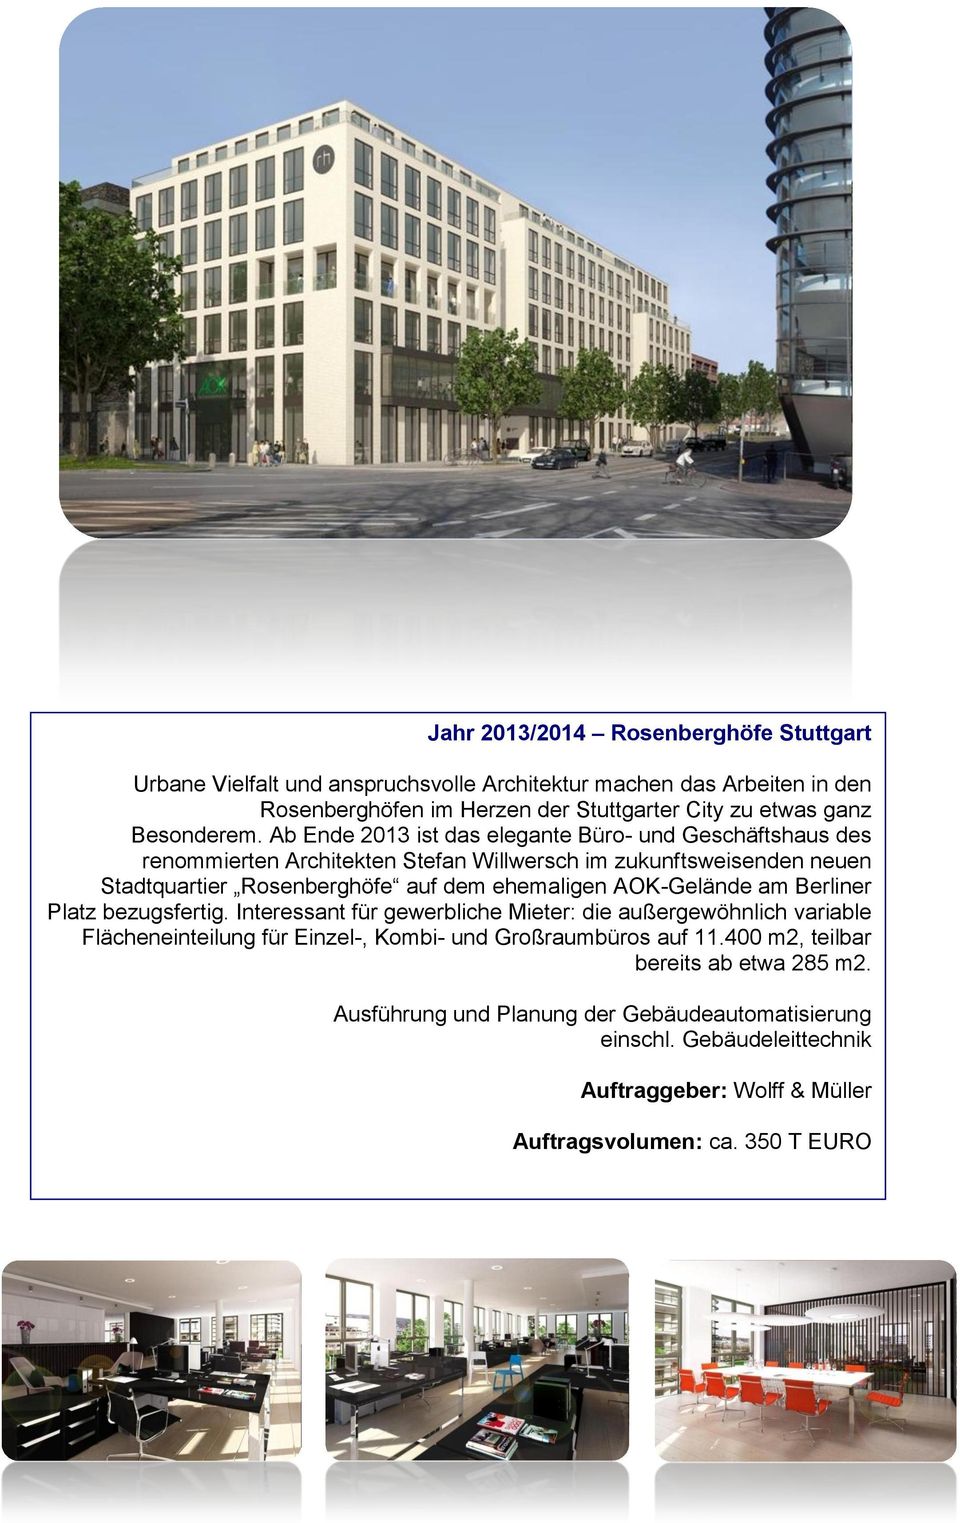 Ab Ende 2013 ist das elegante Büro- und Geschäftshaus des renommierten Architekten Stefan Willwersch im zukunftsweisenden neuen Stadtquartier Rosenberghöfe auf dem